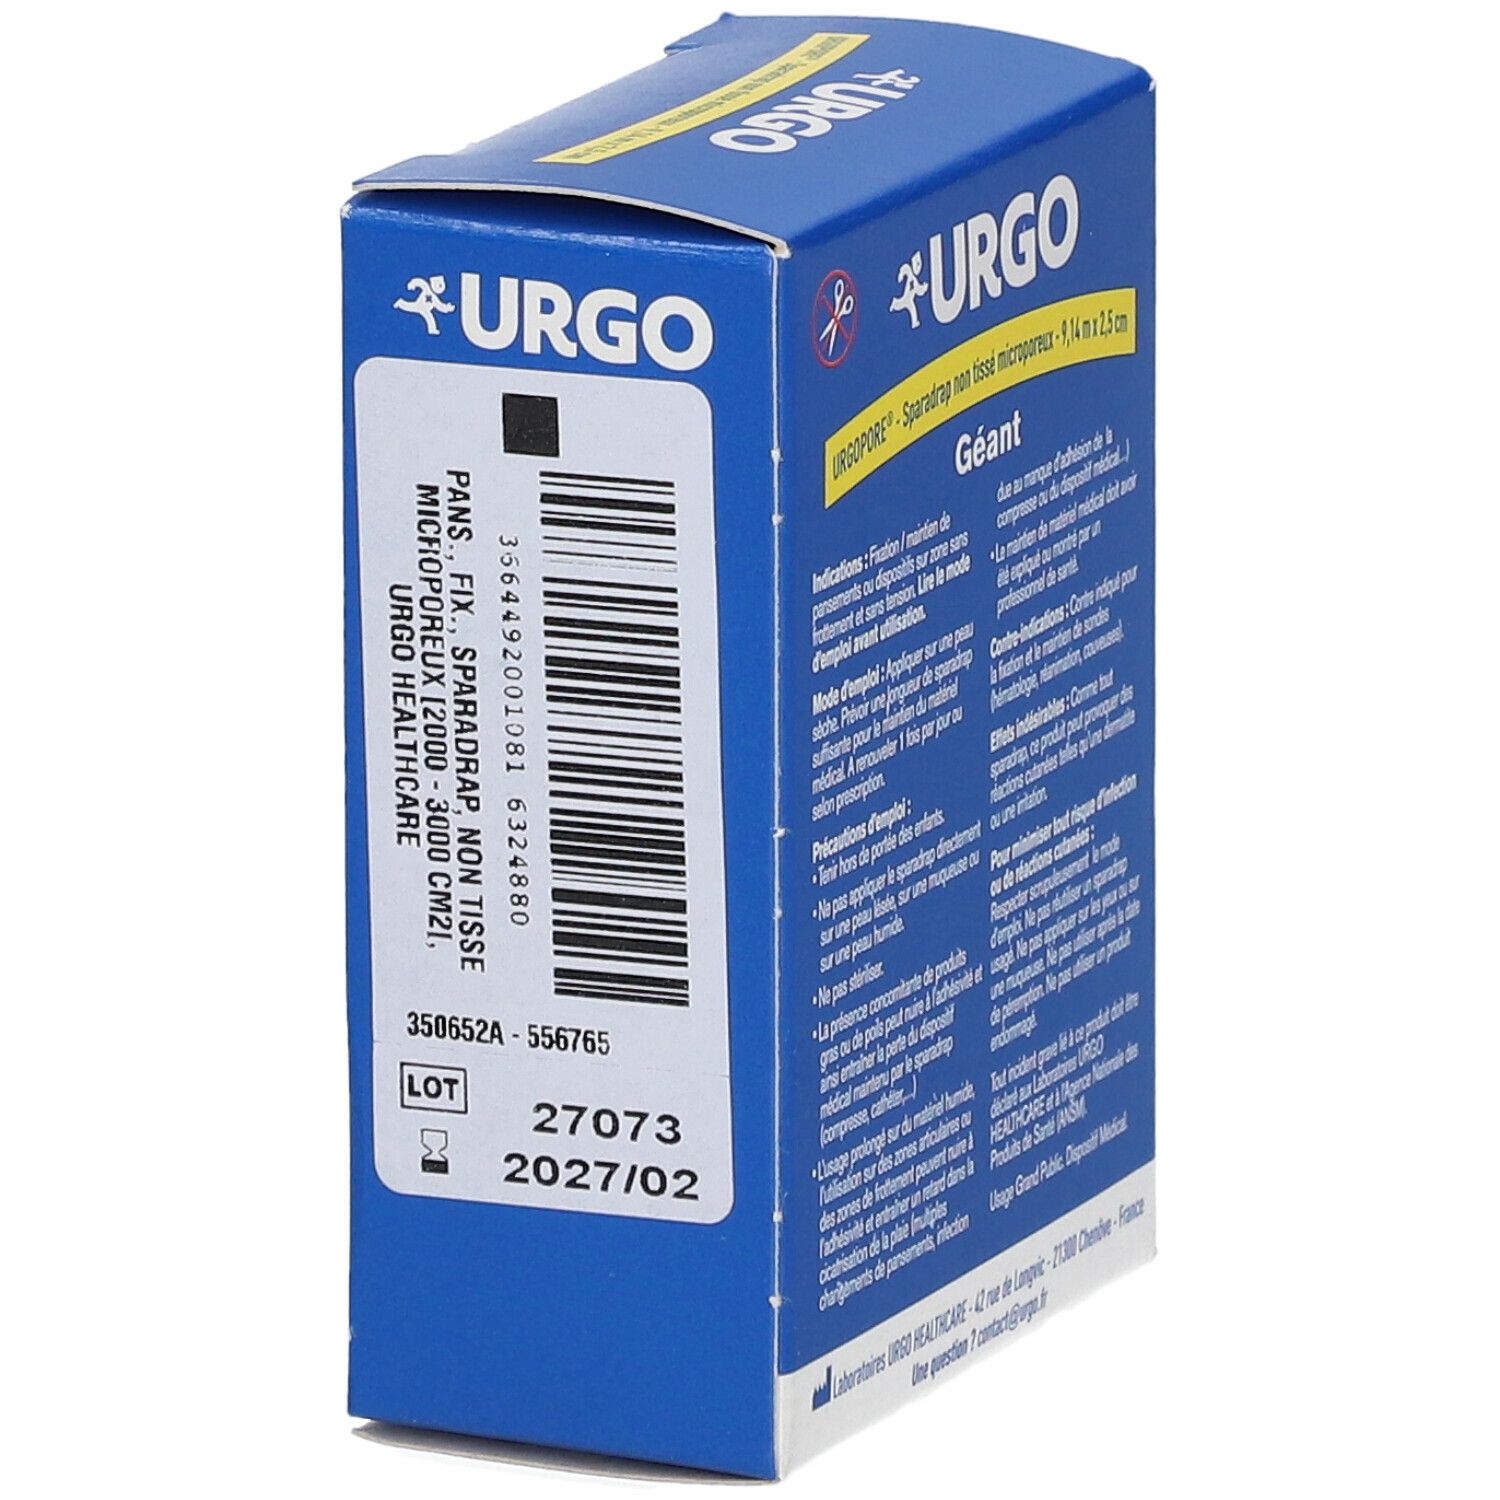 URGO Urgopore® Géant Sparadrap NT microporeux 9,14 m x 2,5 cm